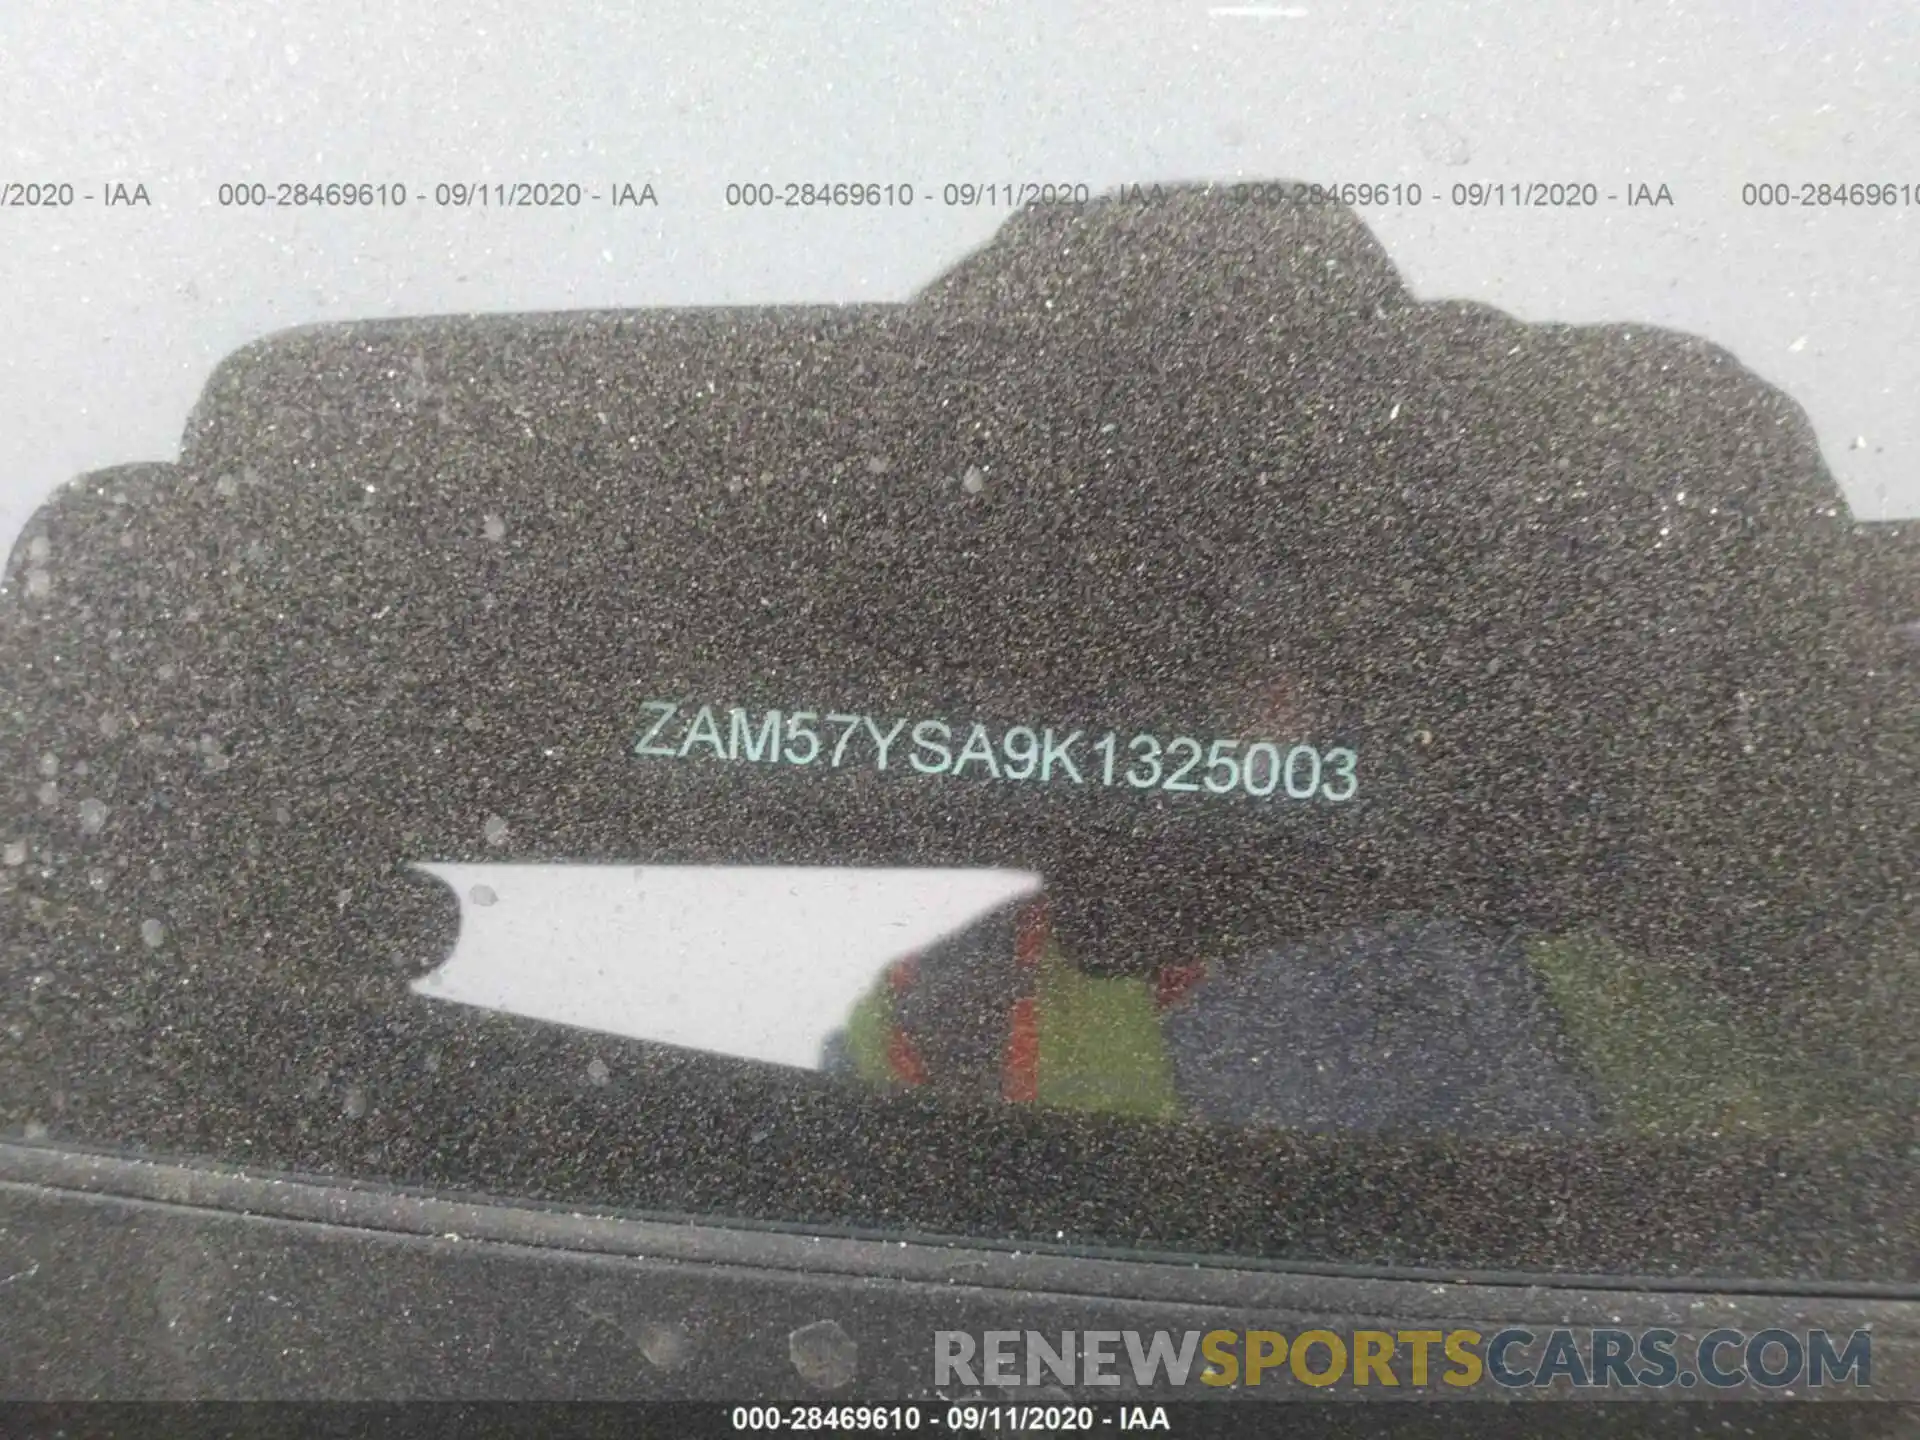 9 Photograph of a damaged car ZAM57YSA9K1325003 MASERATI GHIBLI 2019